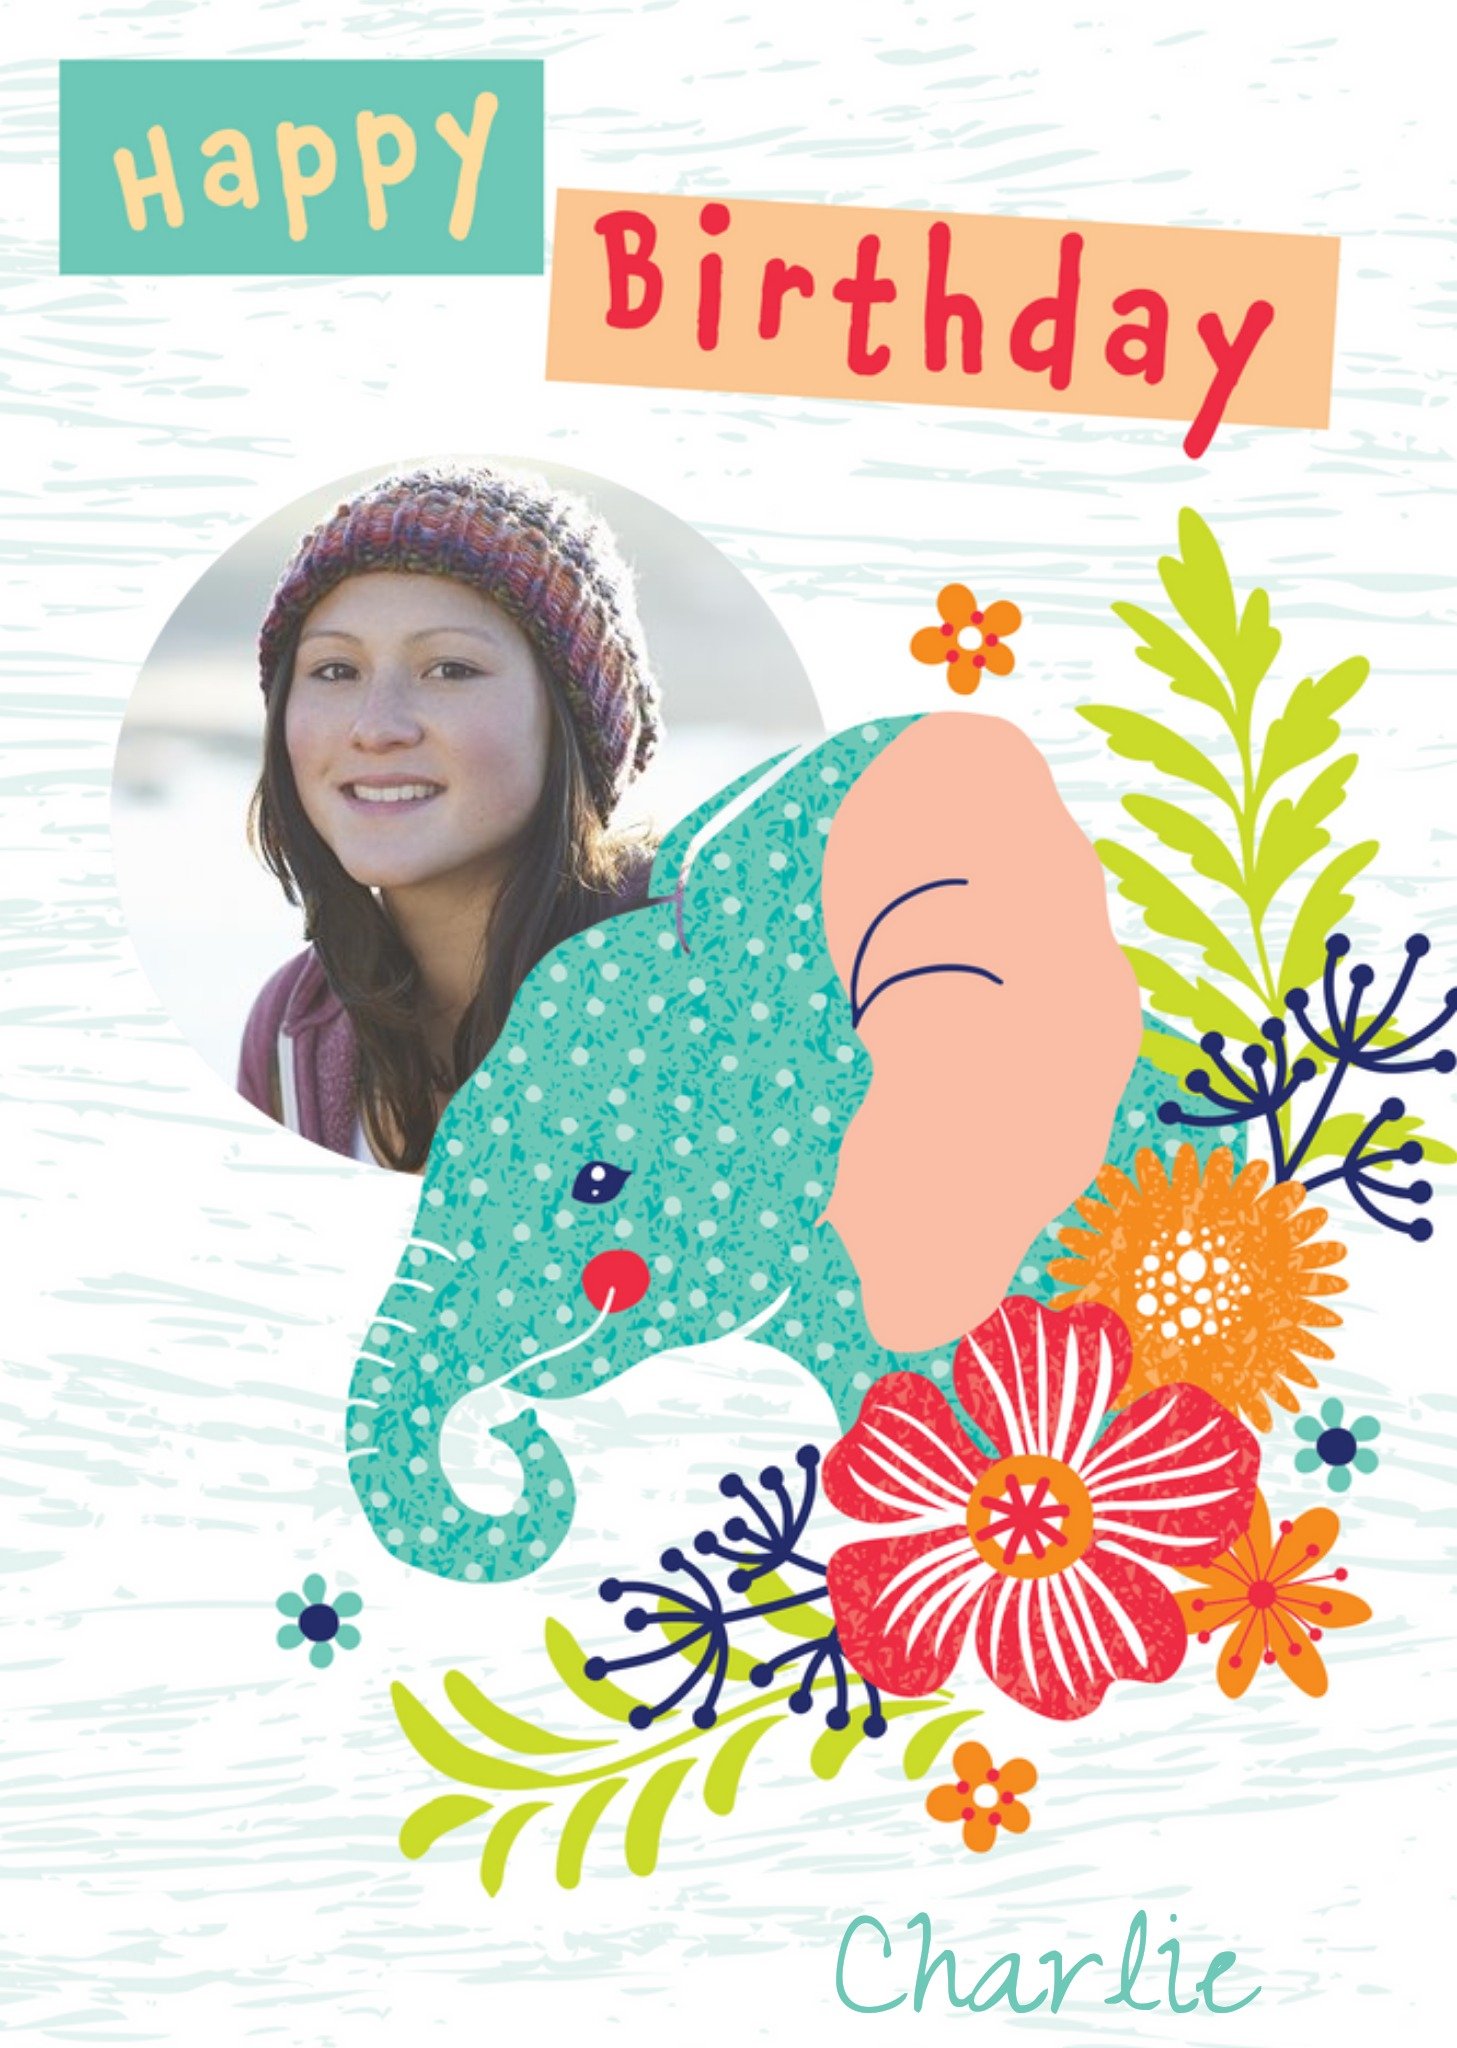 Moonpig Animal Planet Illustrated Elephant Photo Upload Birthday Card, Large